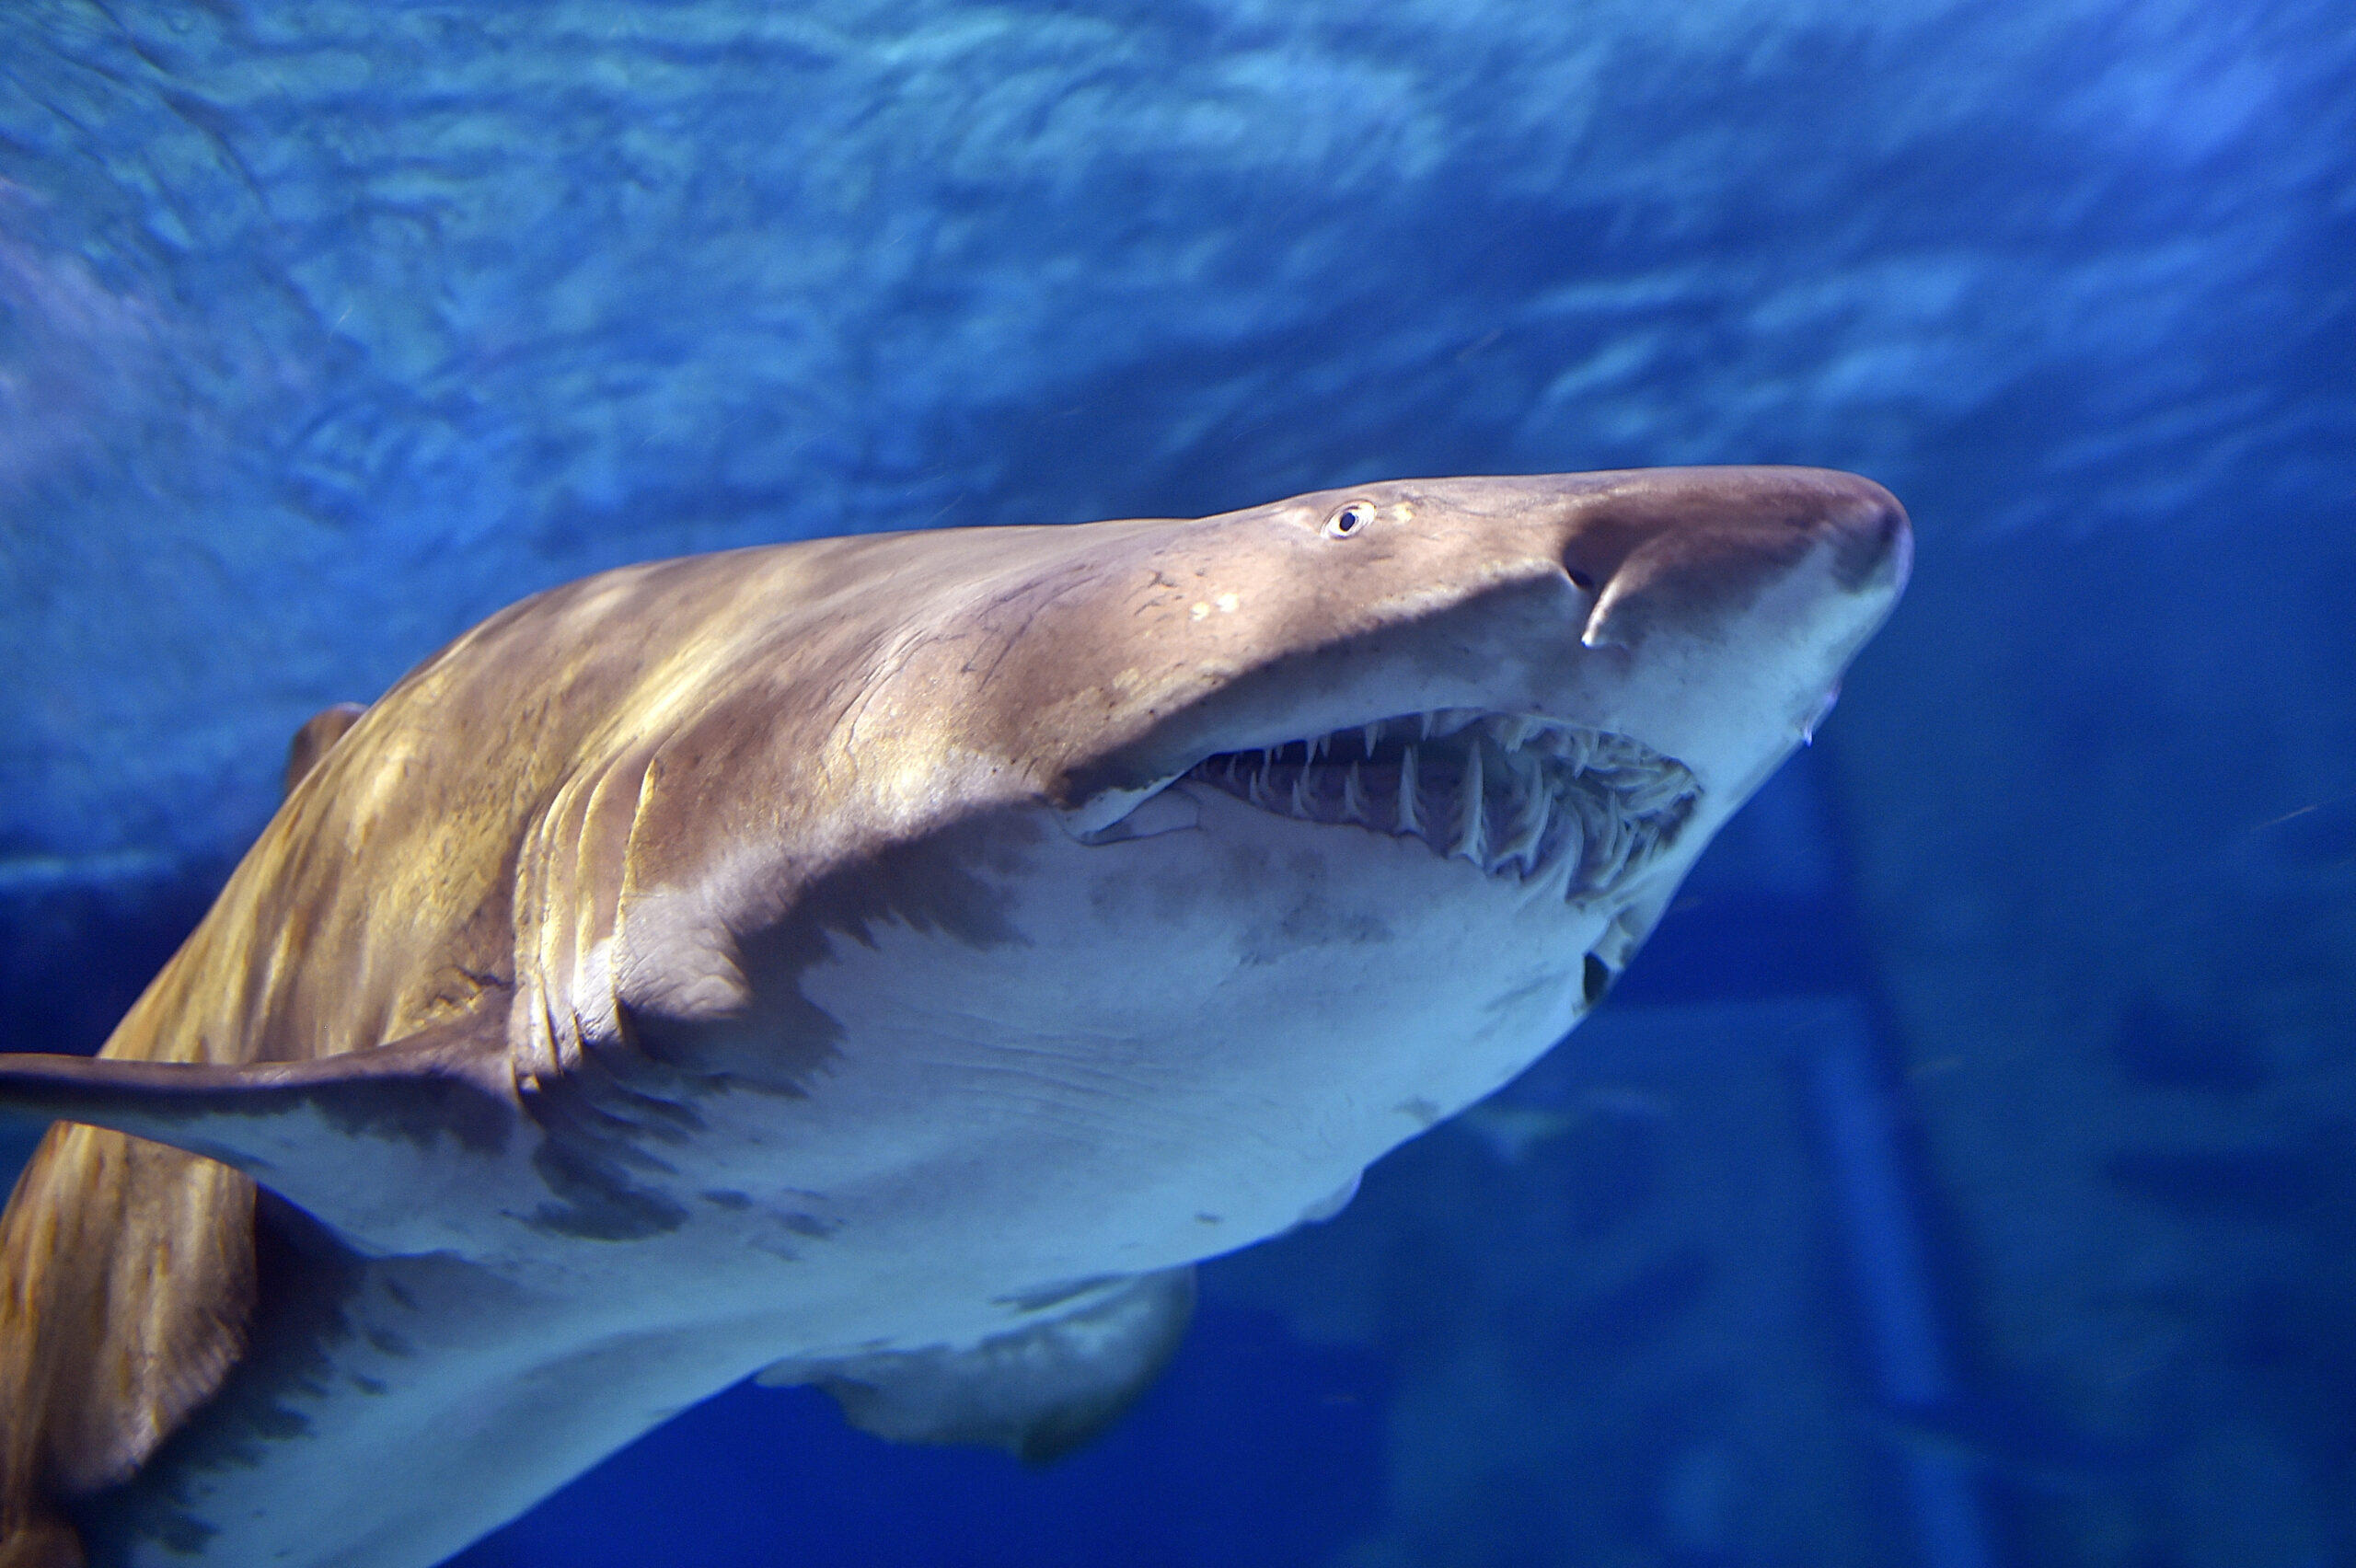 Tiger shark vomits echidna, shocking Australian scientists